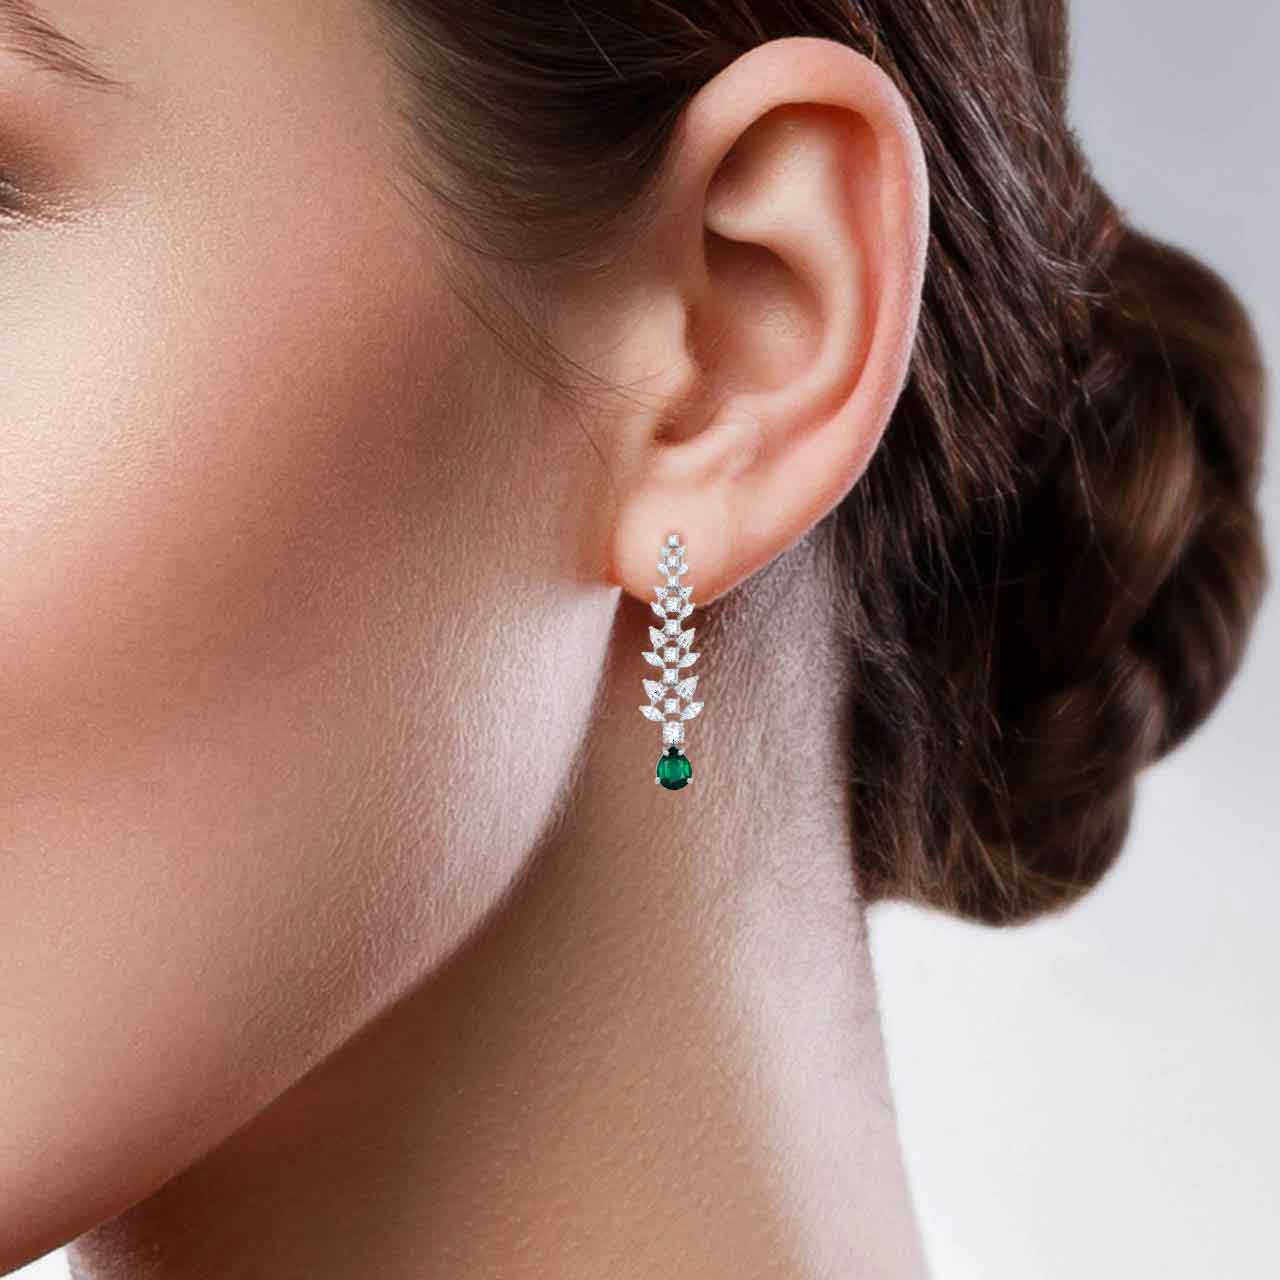 Glamorous Silver Chandelier Earrings